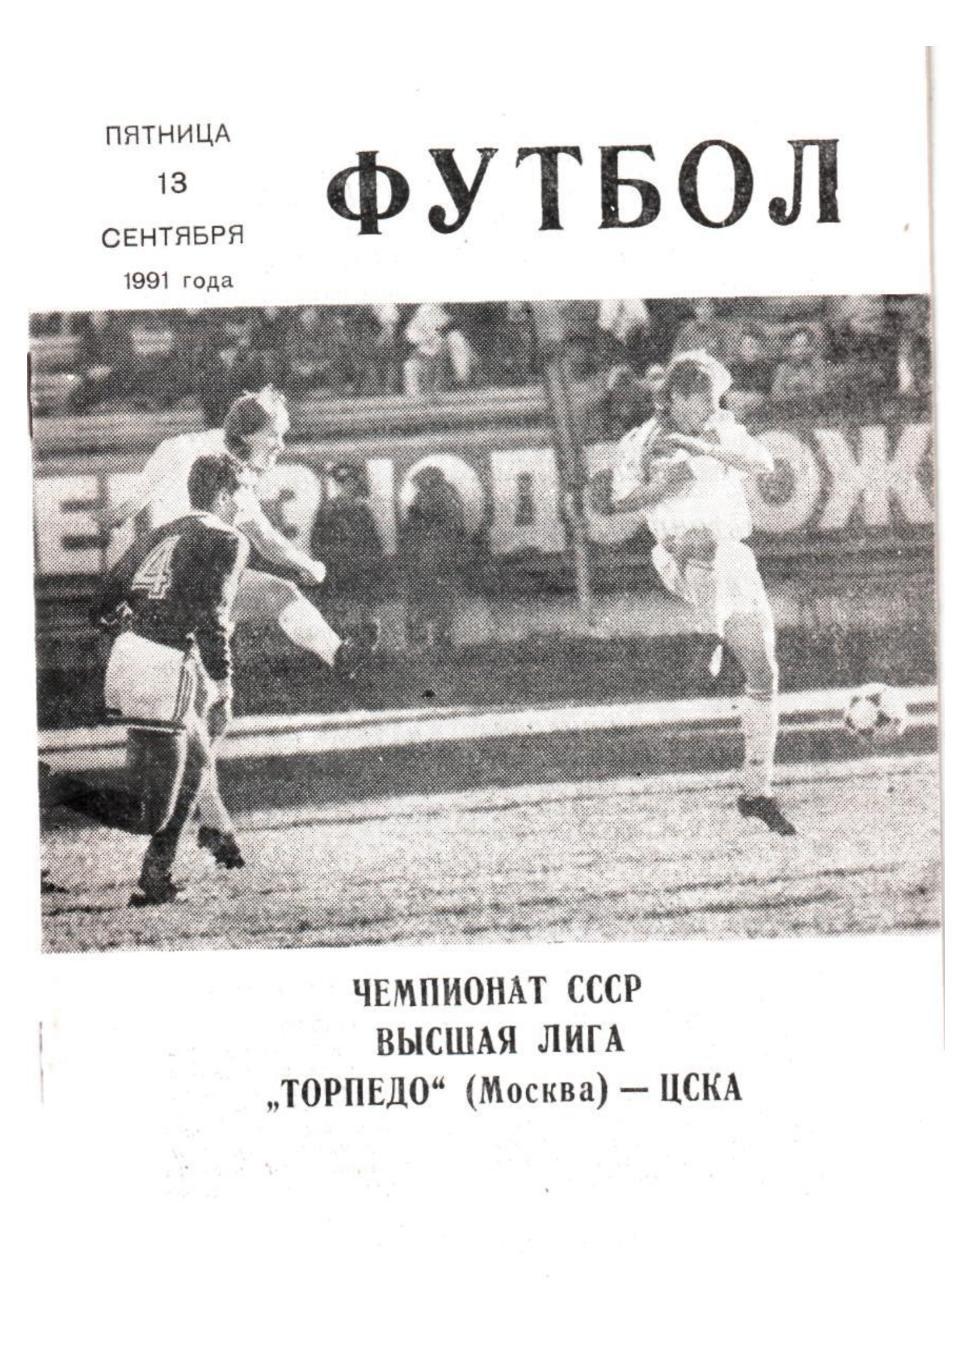 Футбол-91. Торпедо (Москва) – ЦСКА (Москва)